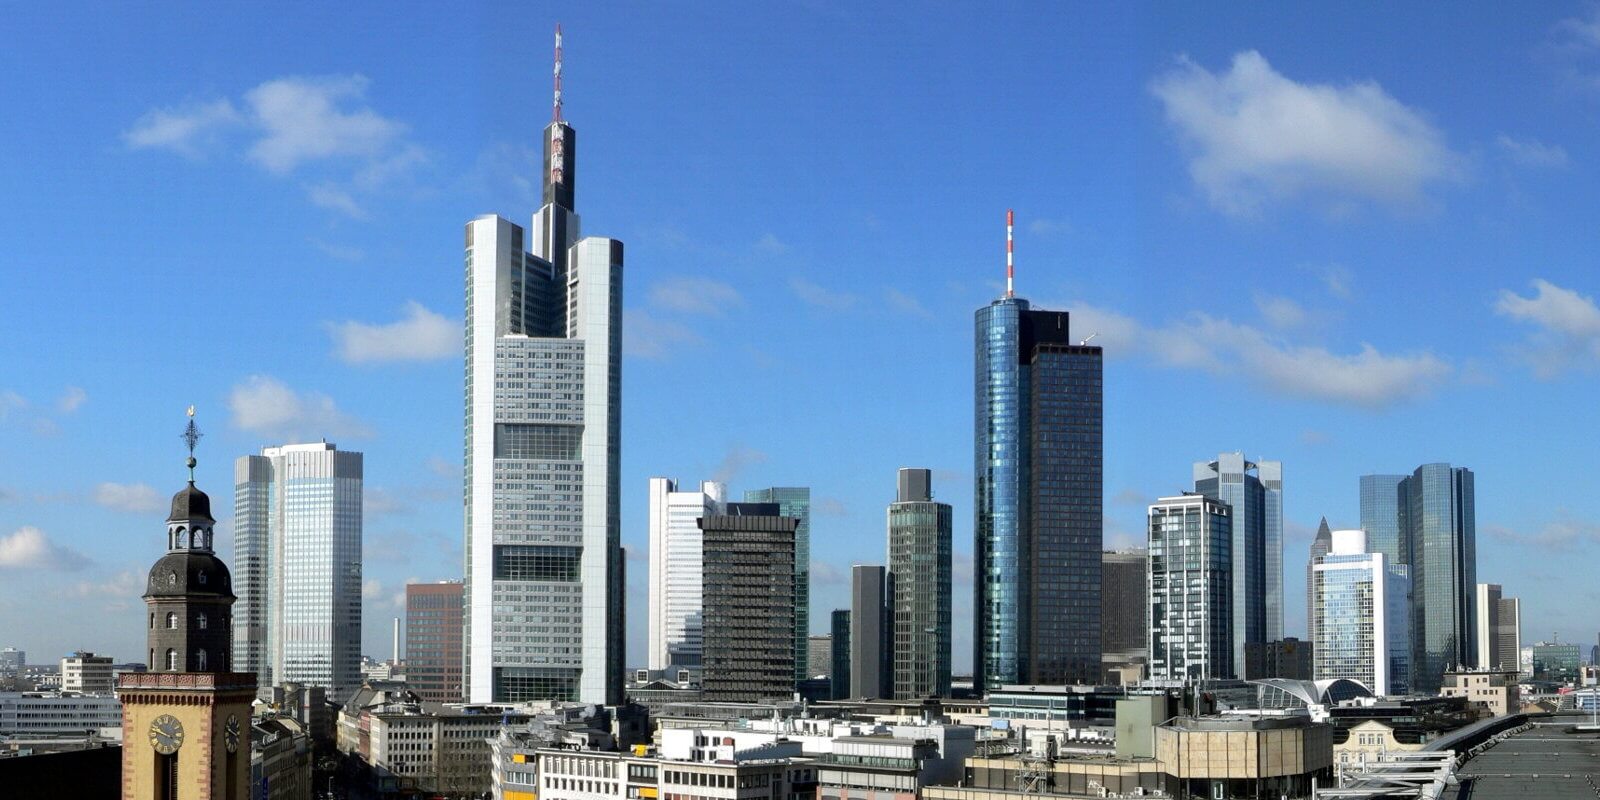 DAA Frankfurt